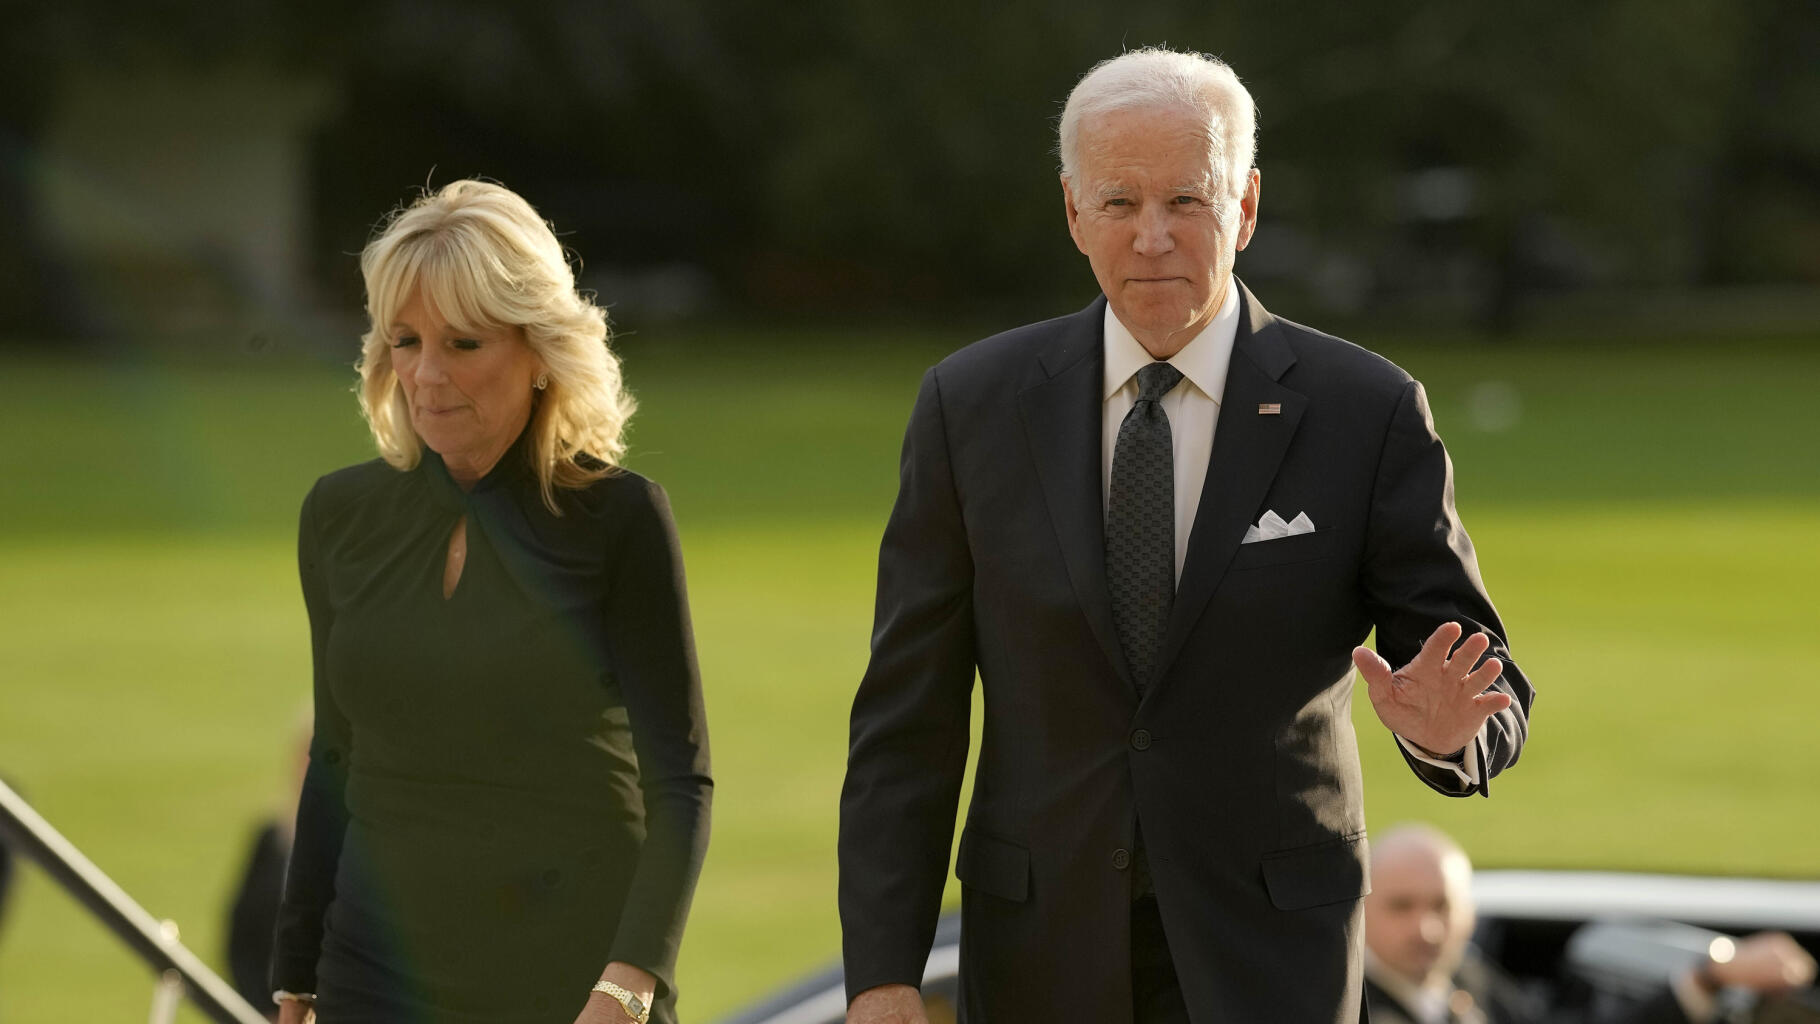 Obsèques d'Elizabeth II : Joe Biden pourra utiliser « The Beast », sa limousine blindée - Le HuffPost